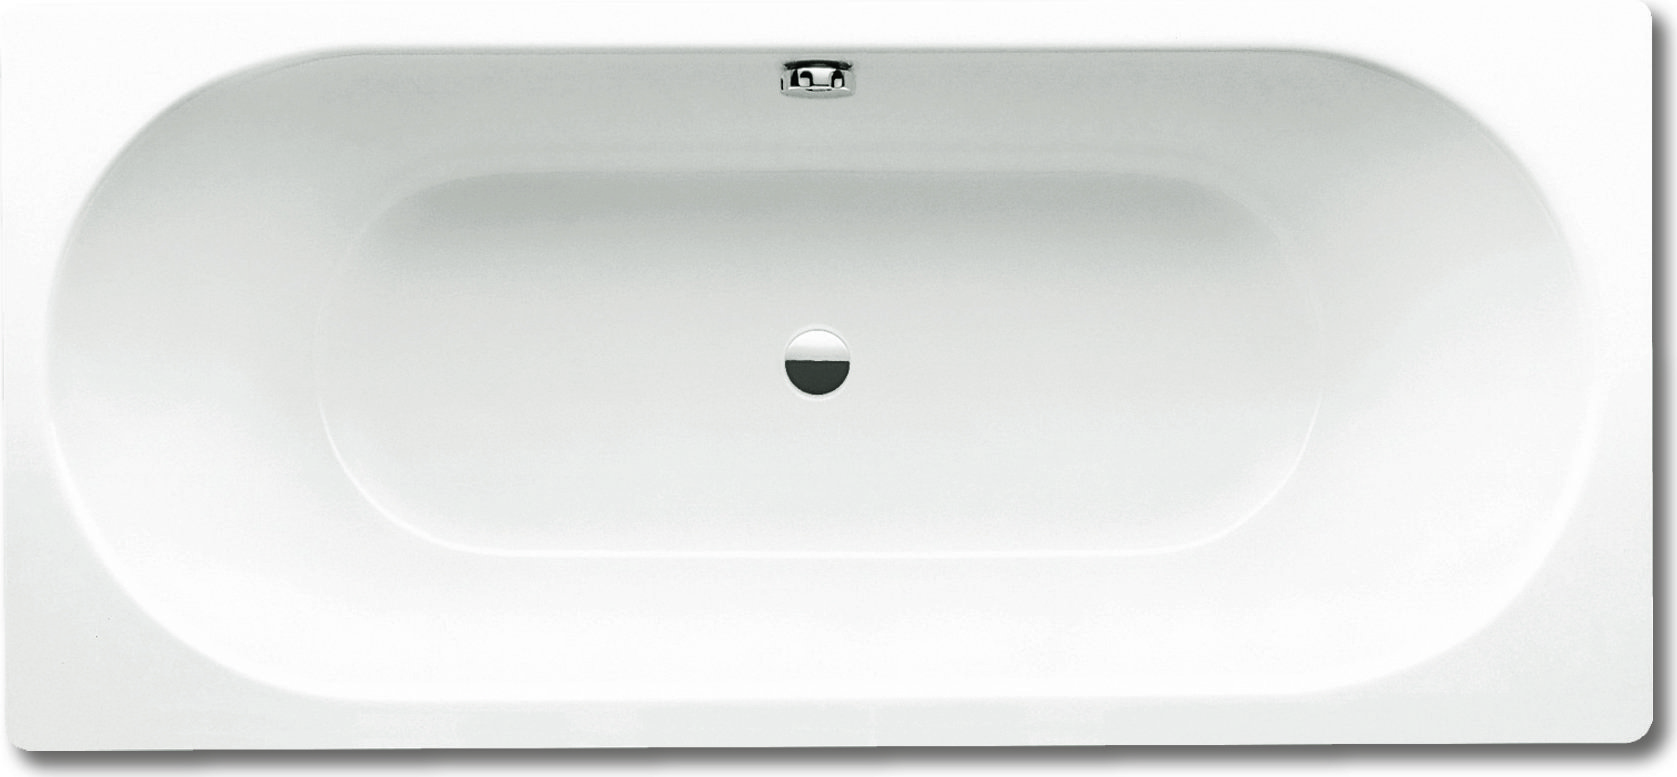 Стальная ванна Kaldewei Classic Duo 110 с покрытием Easy-Clean 180x80, белый, сталь  - купить со скидкой